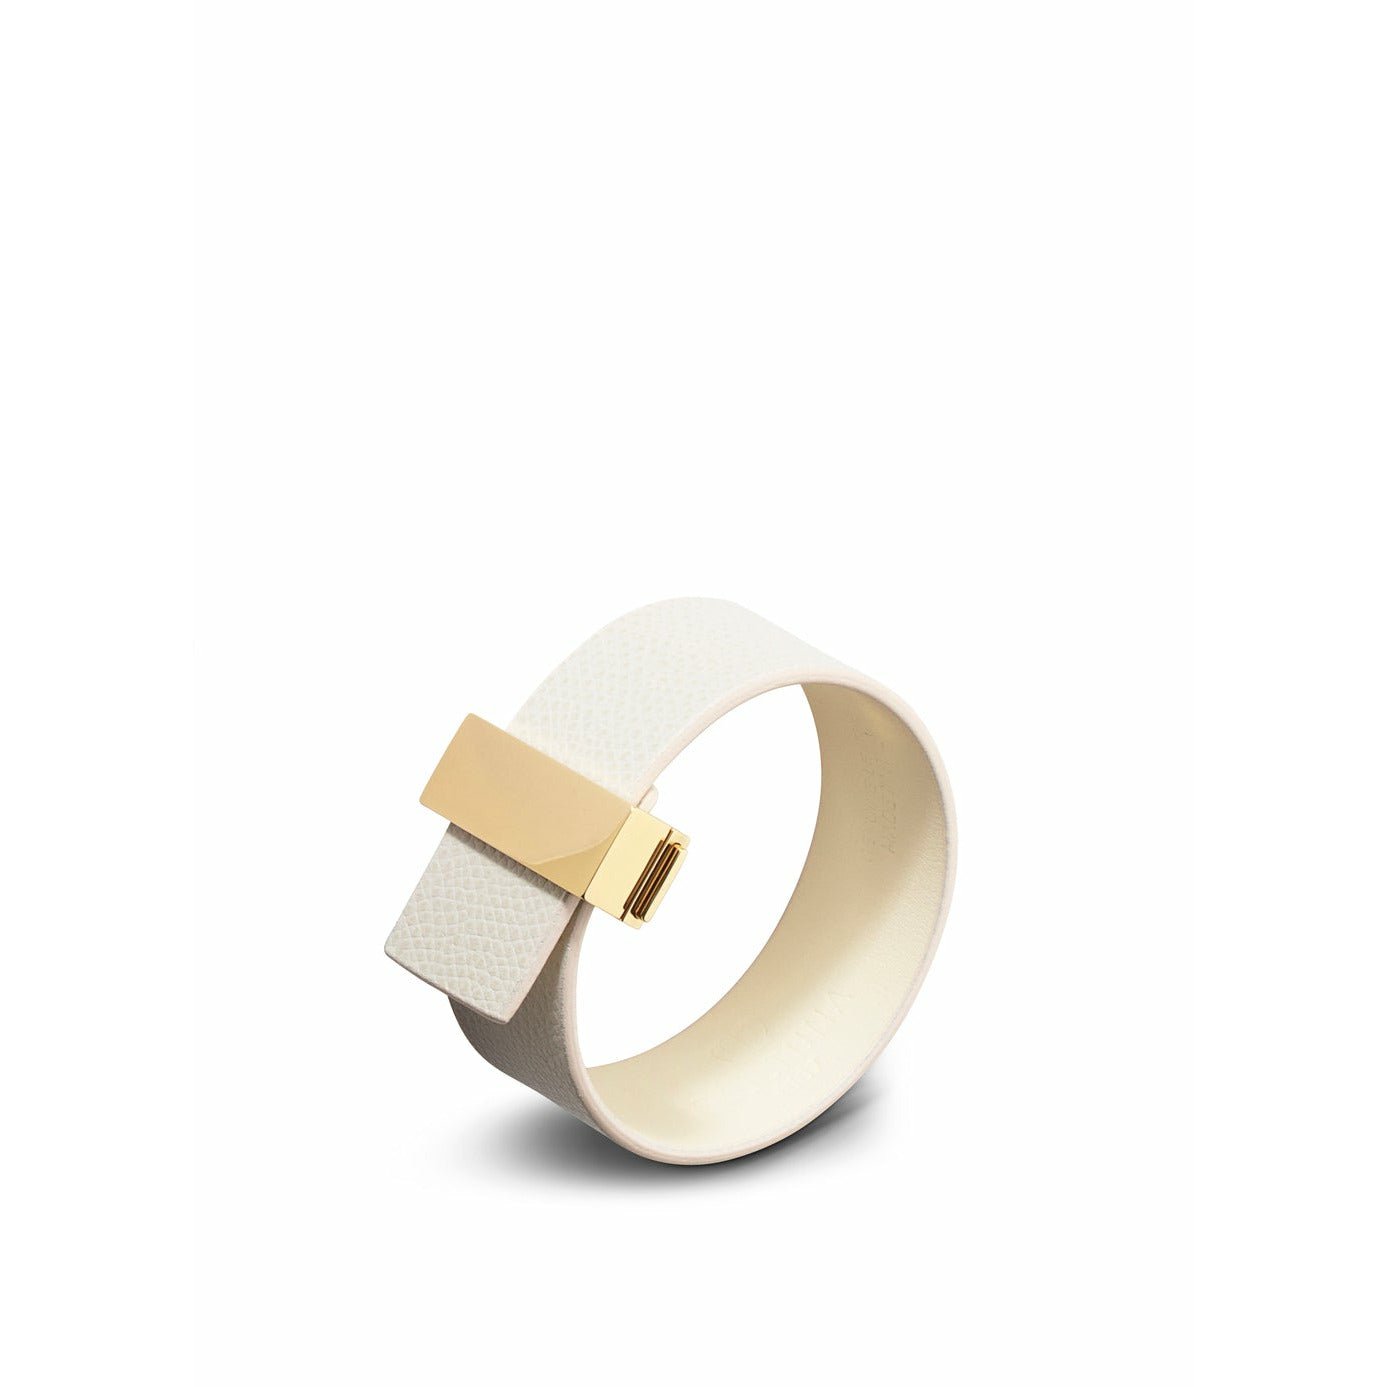 Skultuna Verschluss dünne Lederbandleder Leder/Gold 23 mm l 17 & 18 cm, weiß